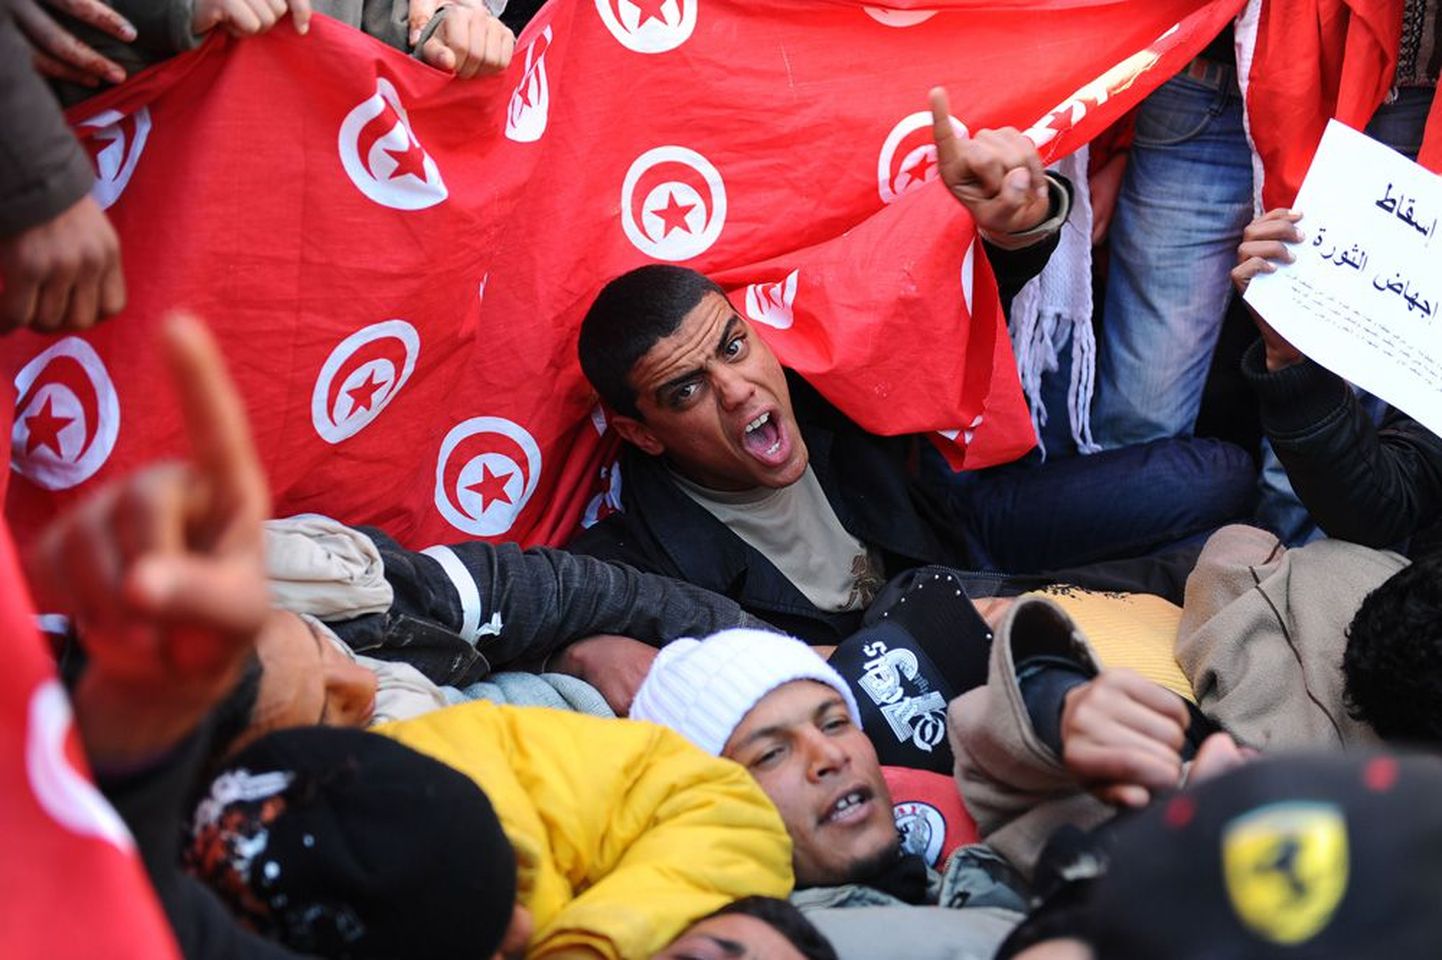 Vihased tuneeslased protesteerimas Tunises ajutise valitsuse vastu.